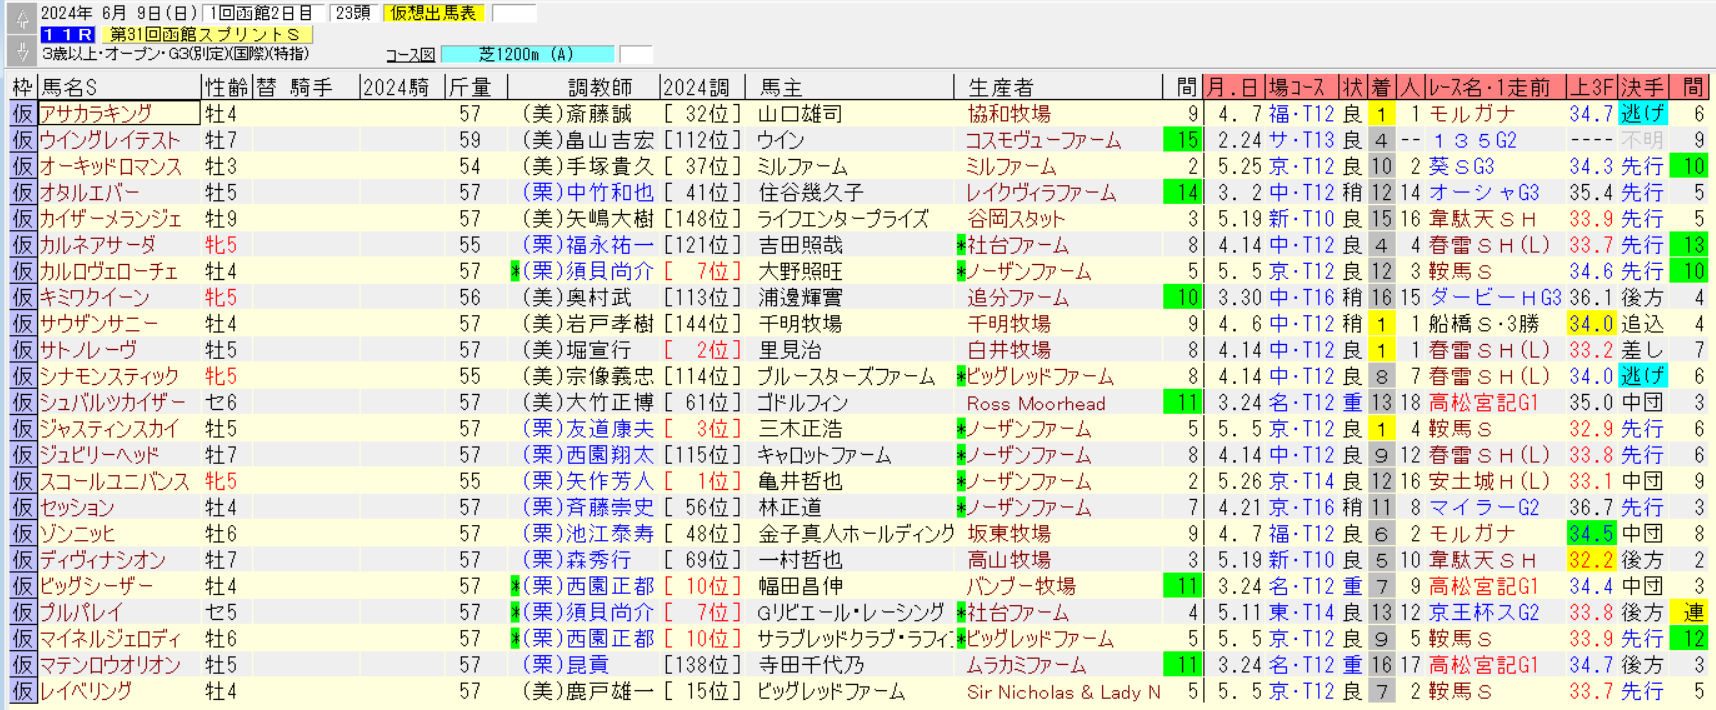 函館スプリントS2024仮想出馬表